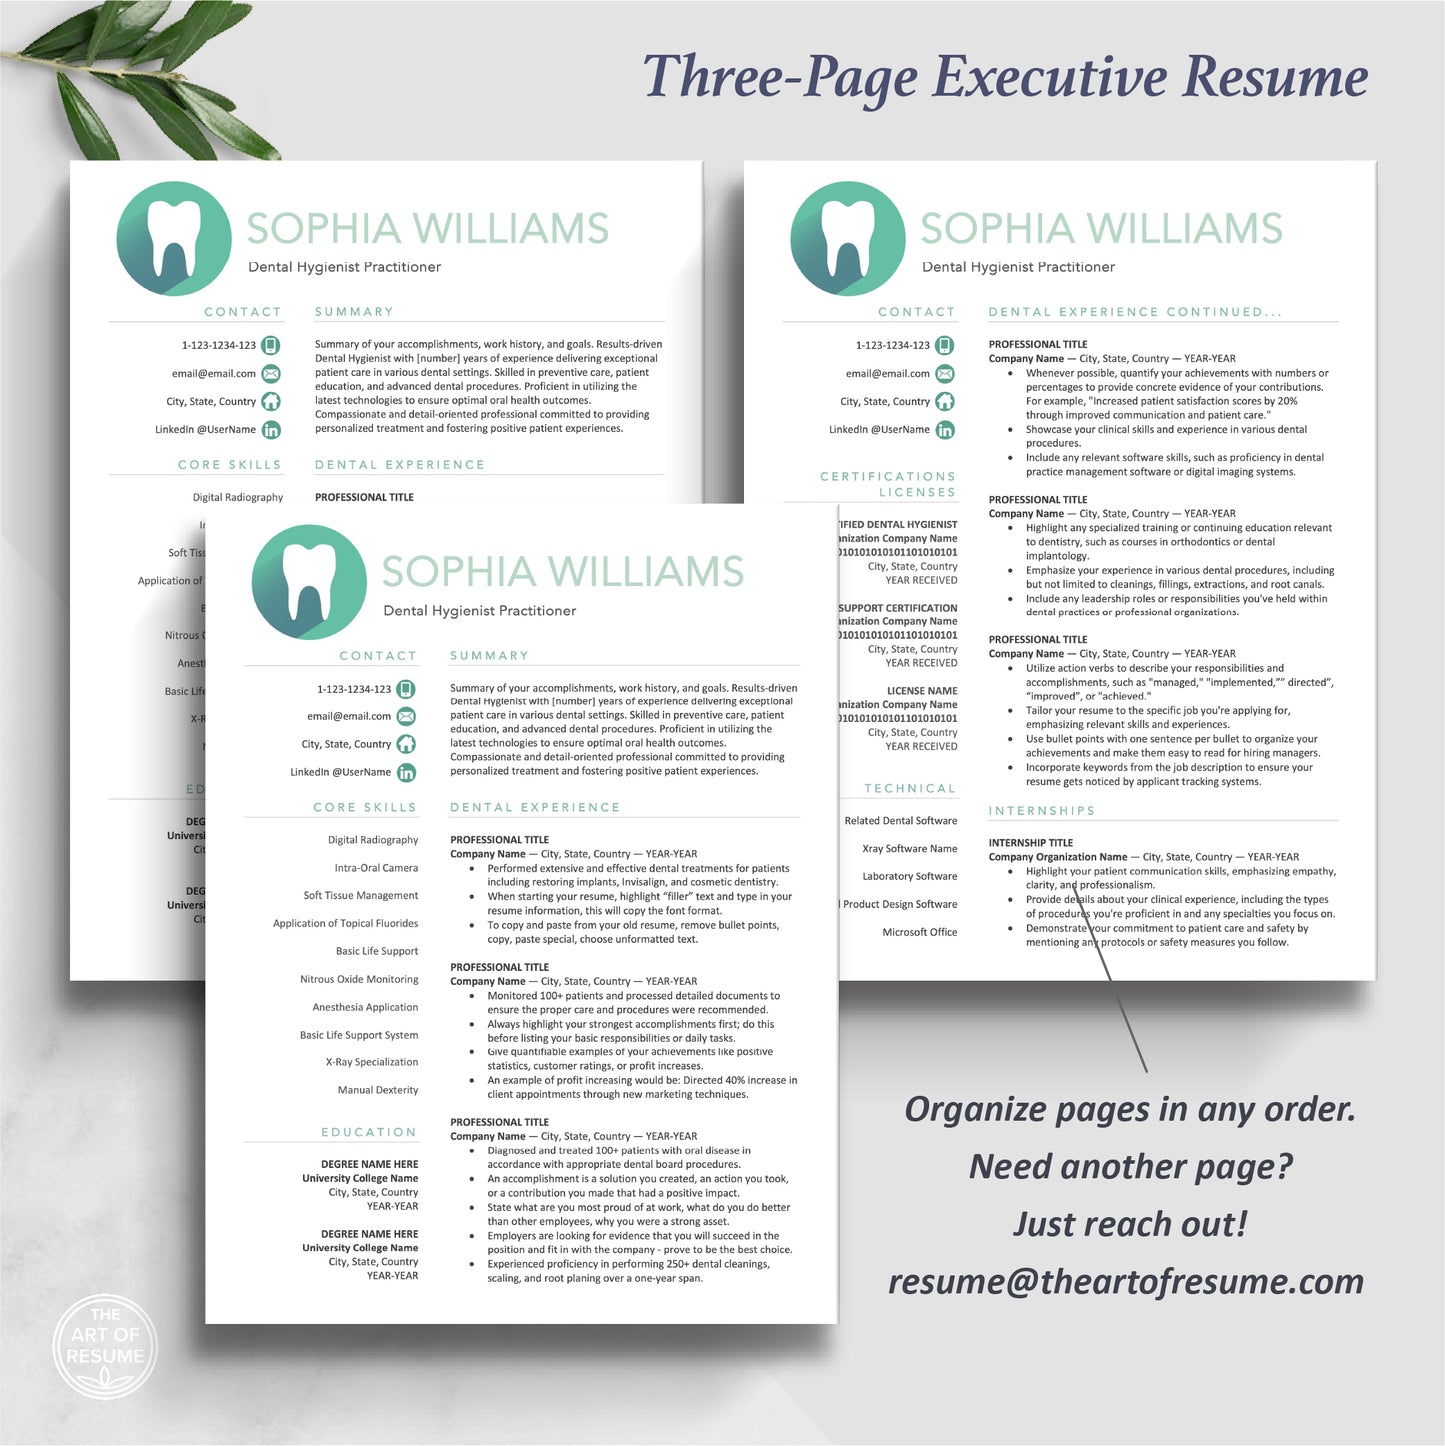 The Art of Resume | Dental Hygienist Dentist Resume CV Template Design Bundle Teal | 3 Page Executive Resume Format 